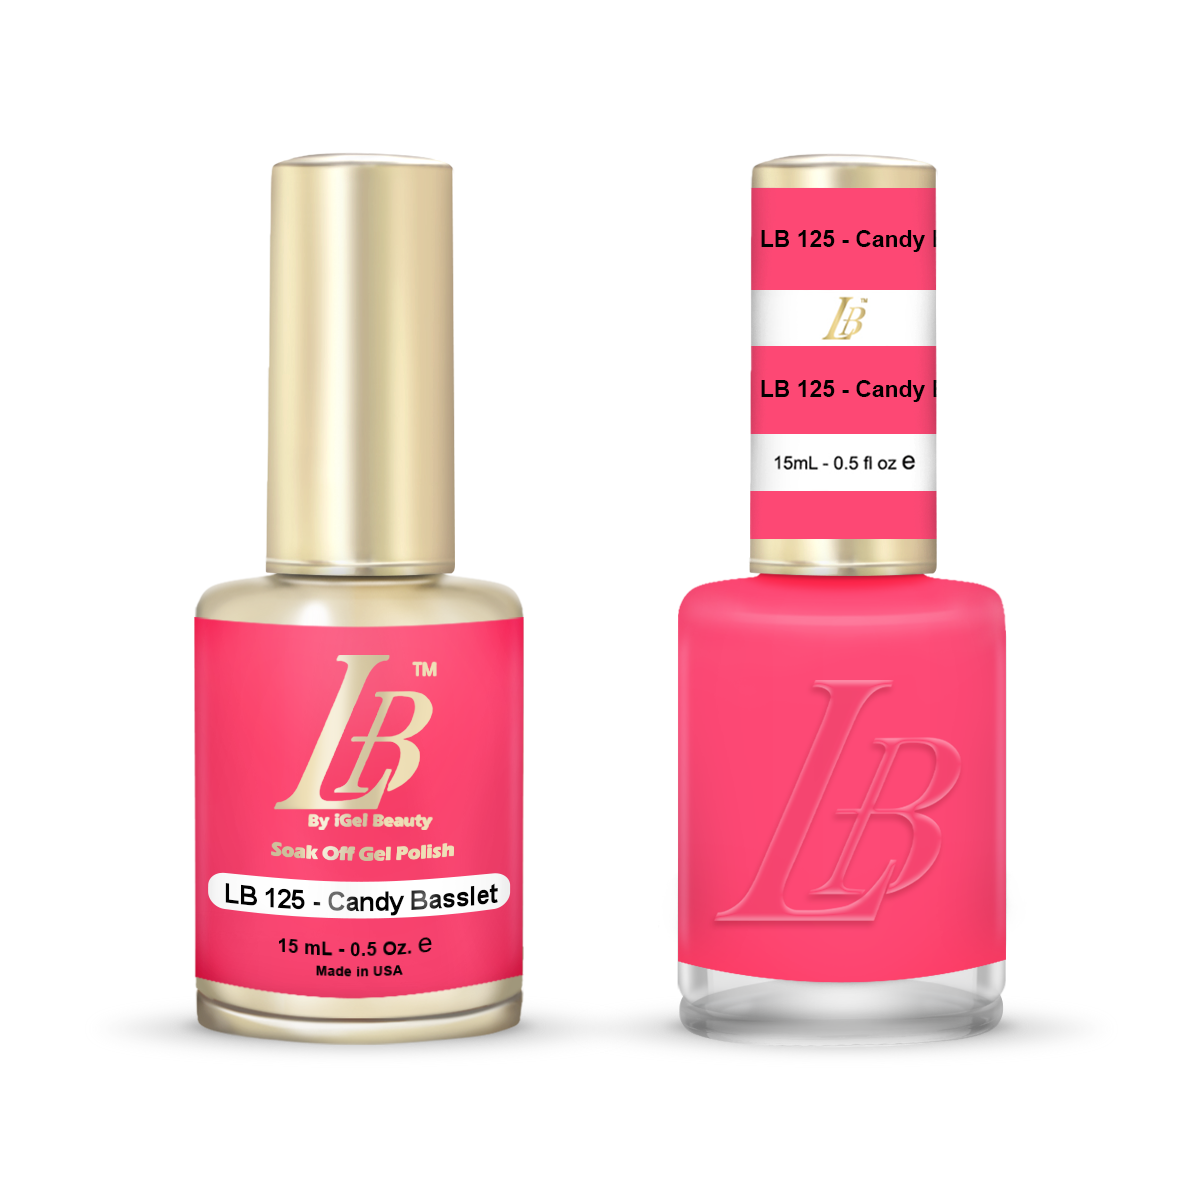 LB Duo - LB125 Candy Basslet